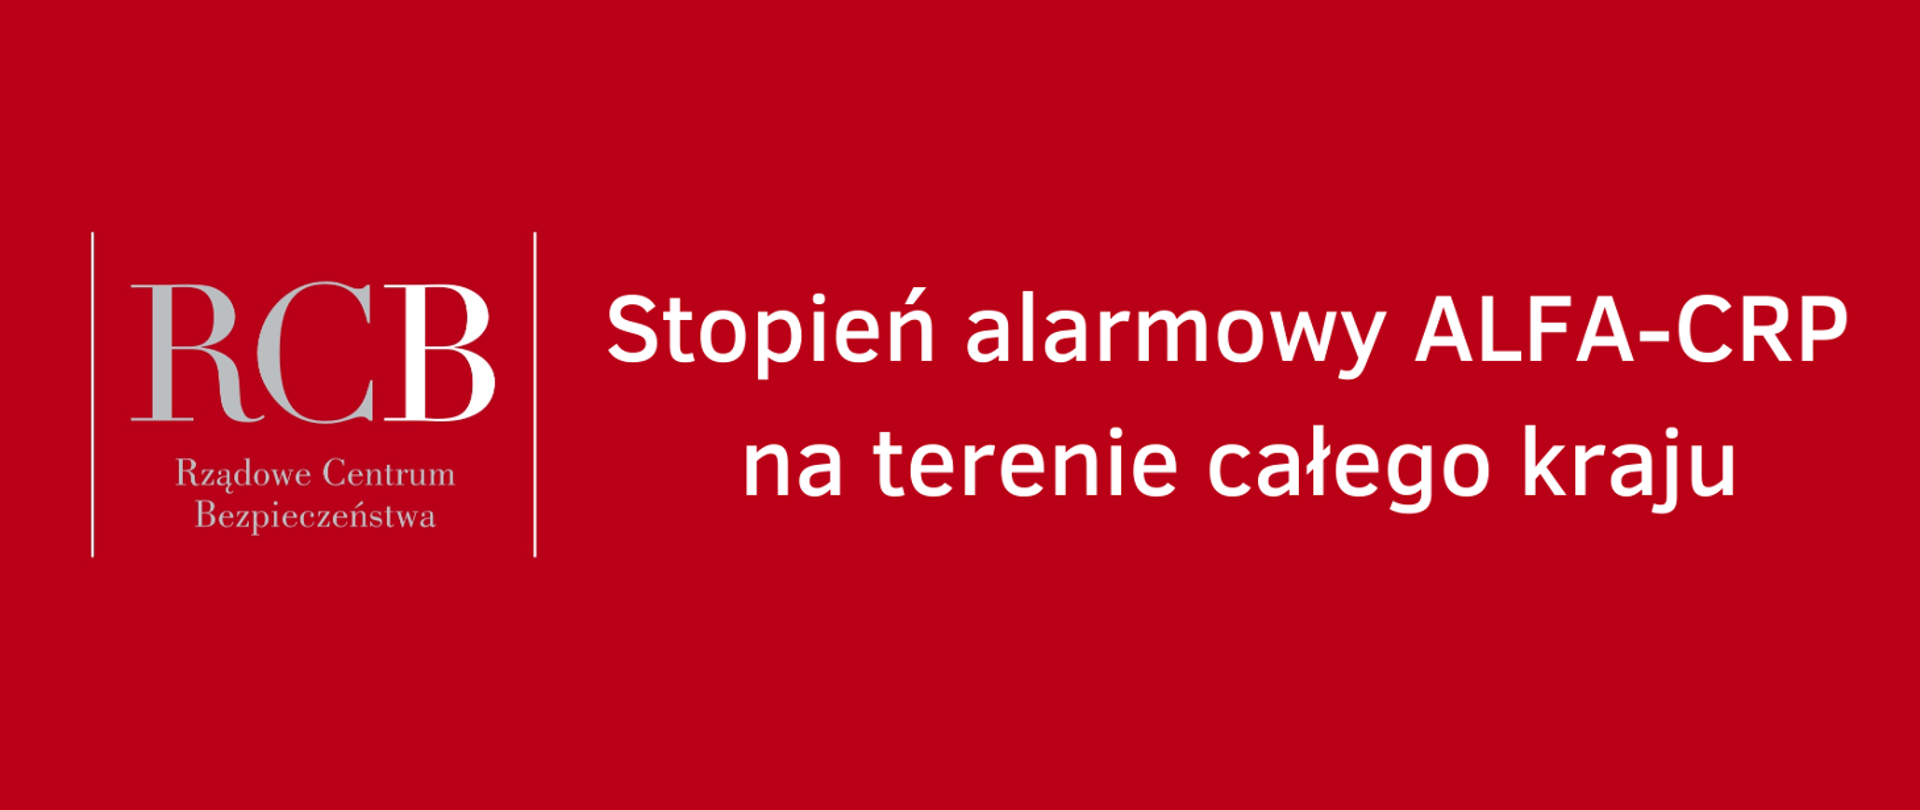 Biały tekst na czerwonym tle "Stopień alarmowy ALFA-CRP na terenie całego kraju"